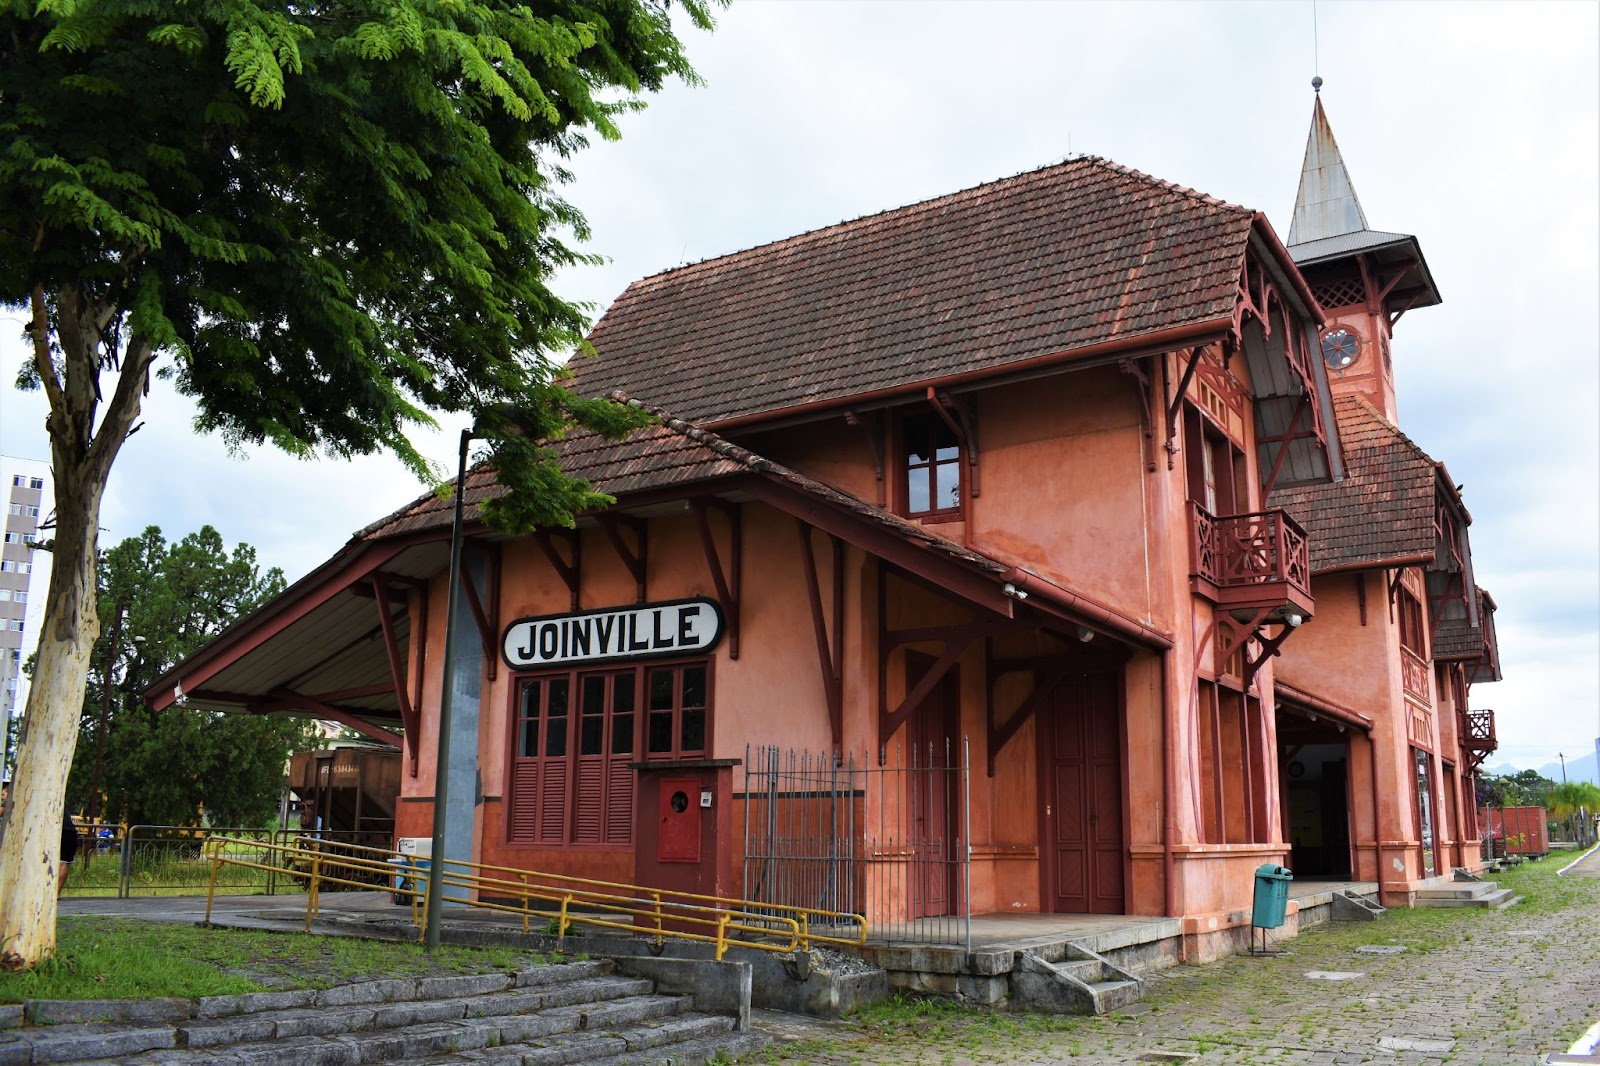 Antiga estação de Trem de Joinville. A construção de estilo enxaimel tem paredes alaranjadas, telhados íngremes e muitos detalhes em madeira escura.